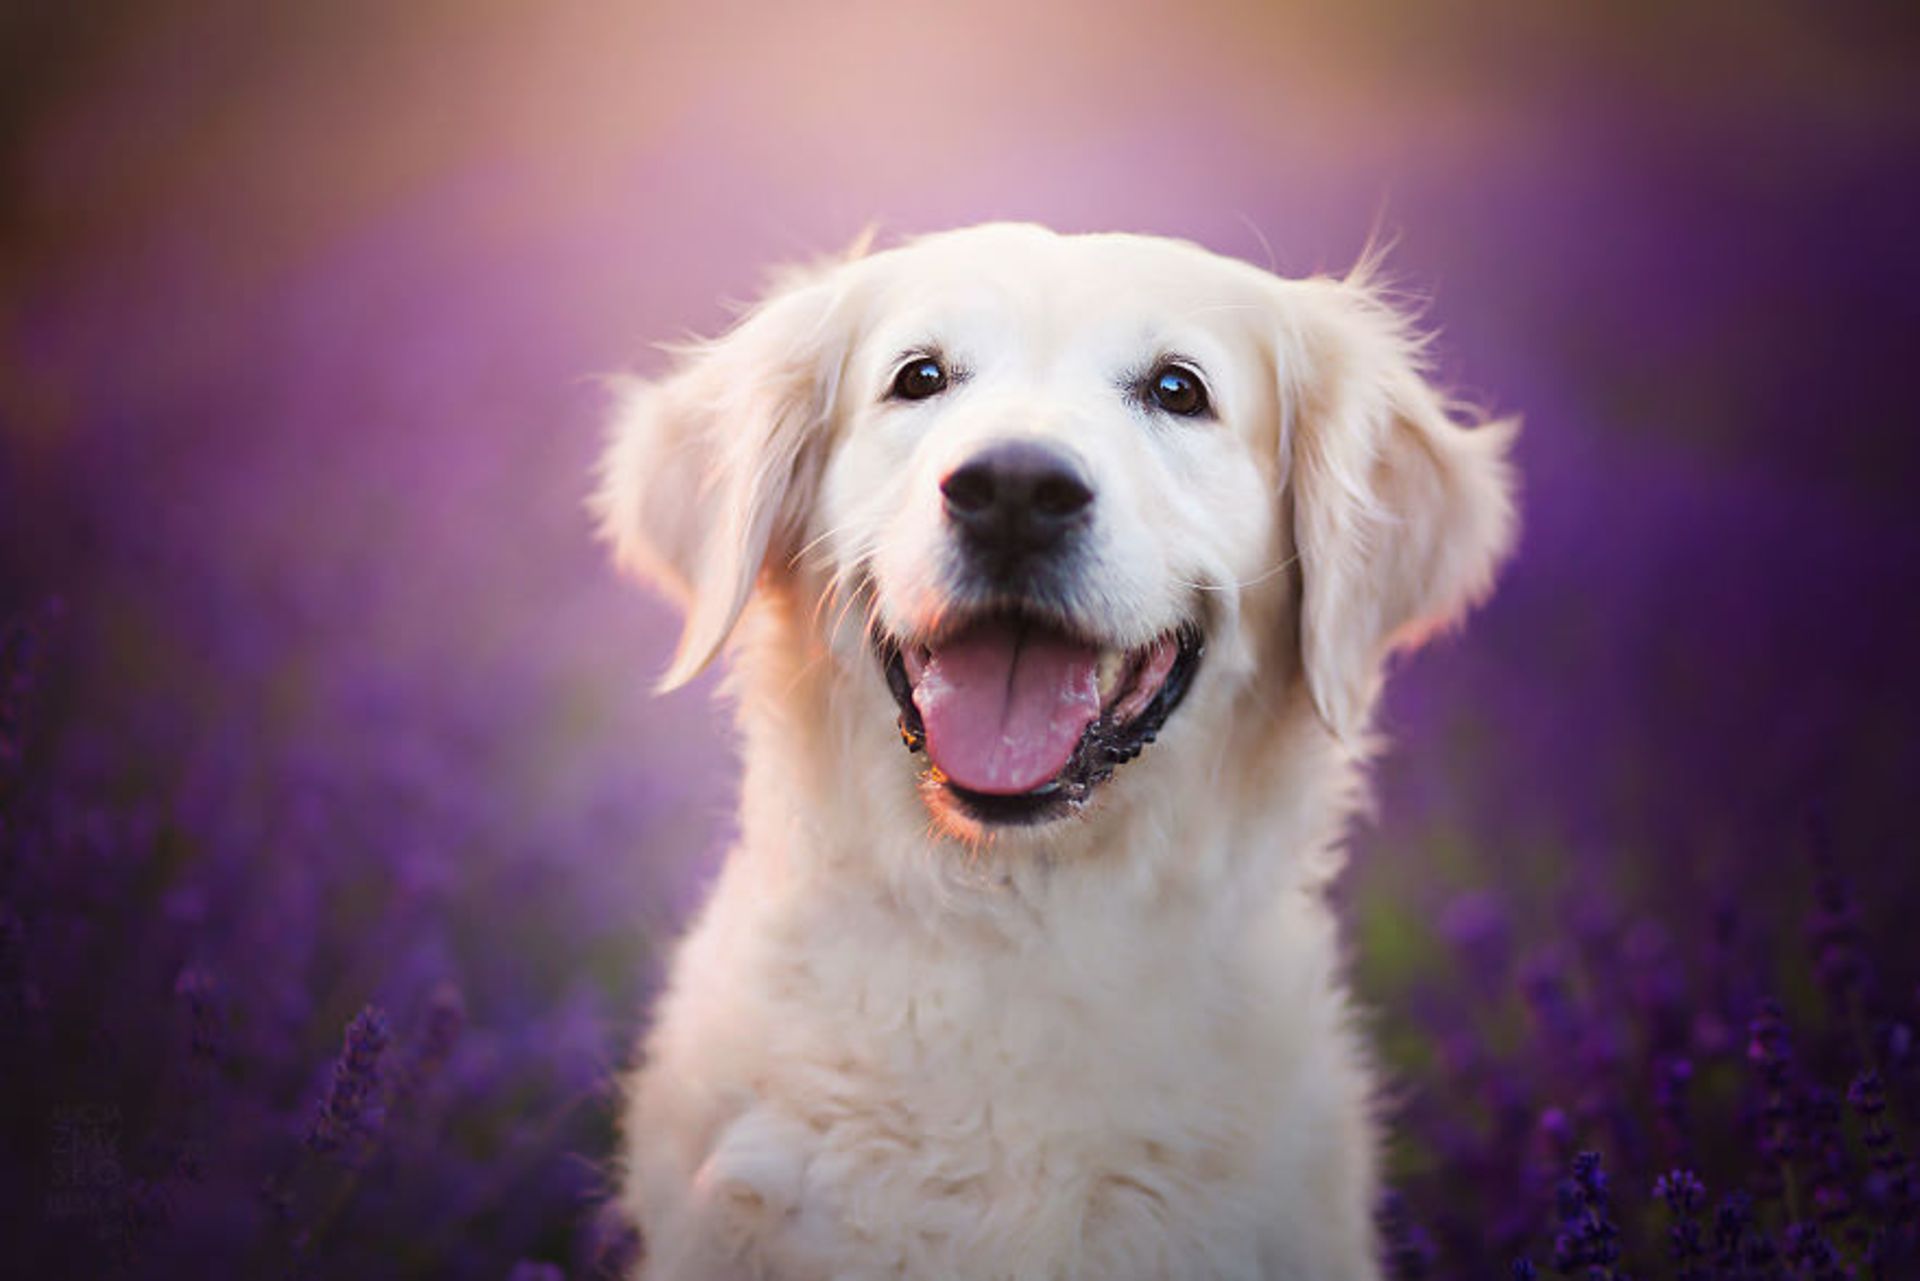 مرجع متخصصين ايران گالري تصاويري از لبخند سگ ها